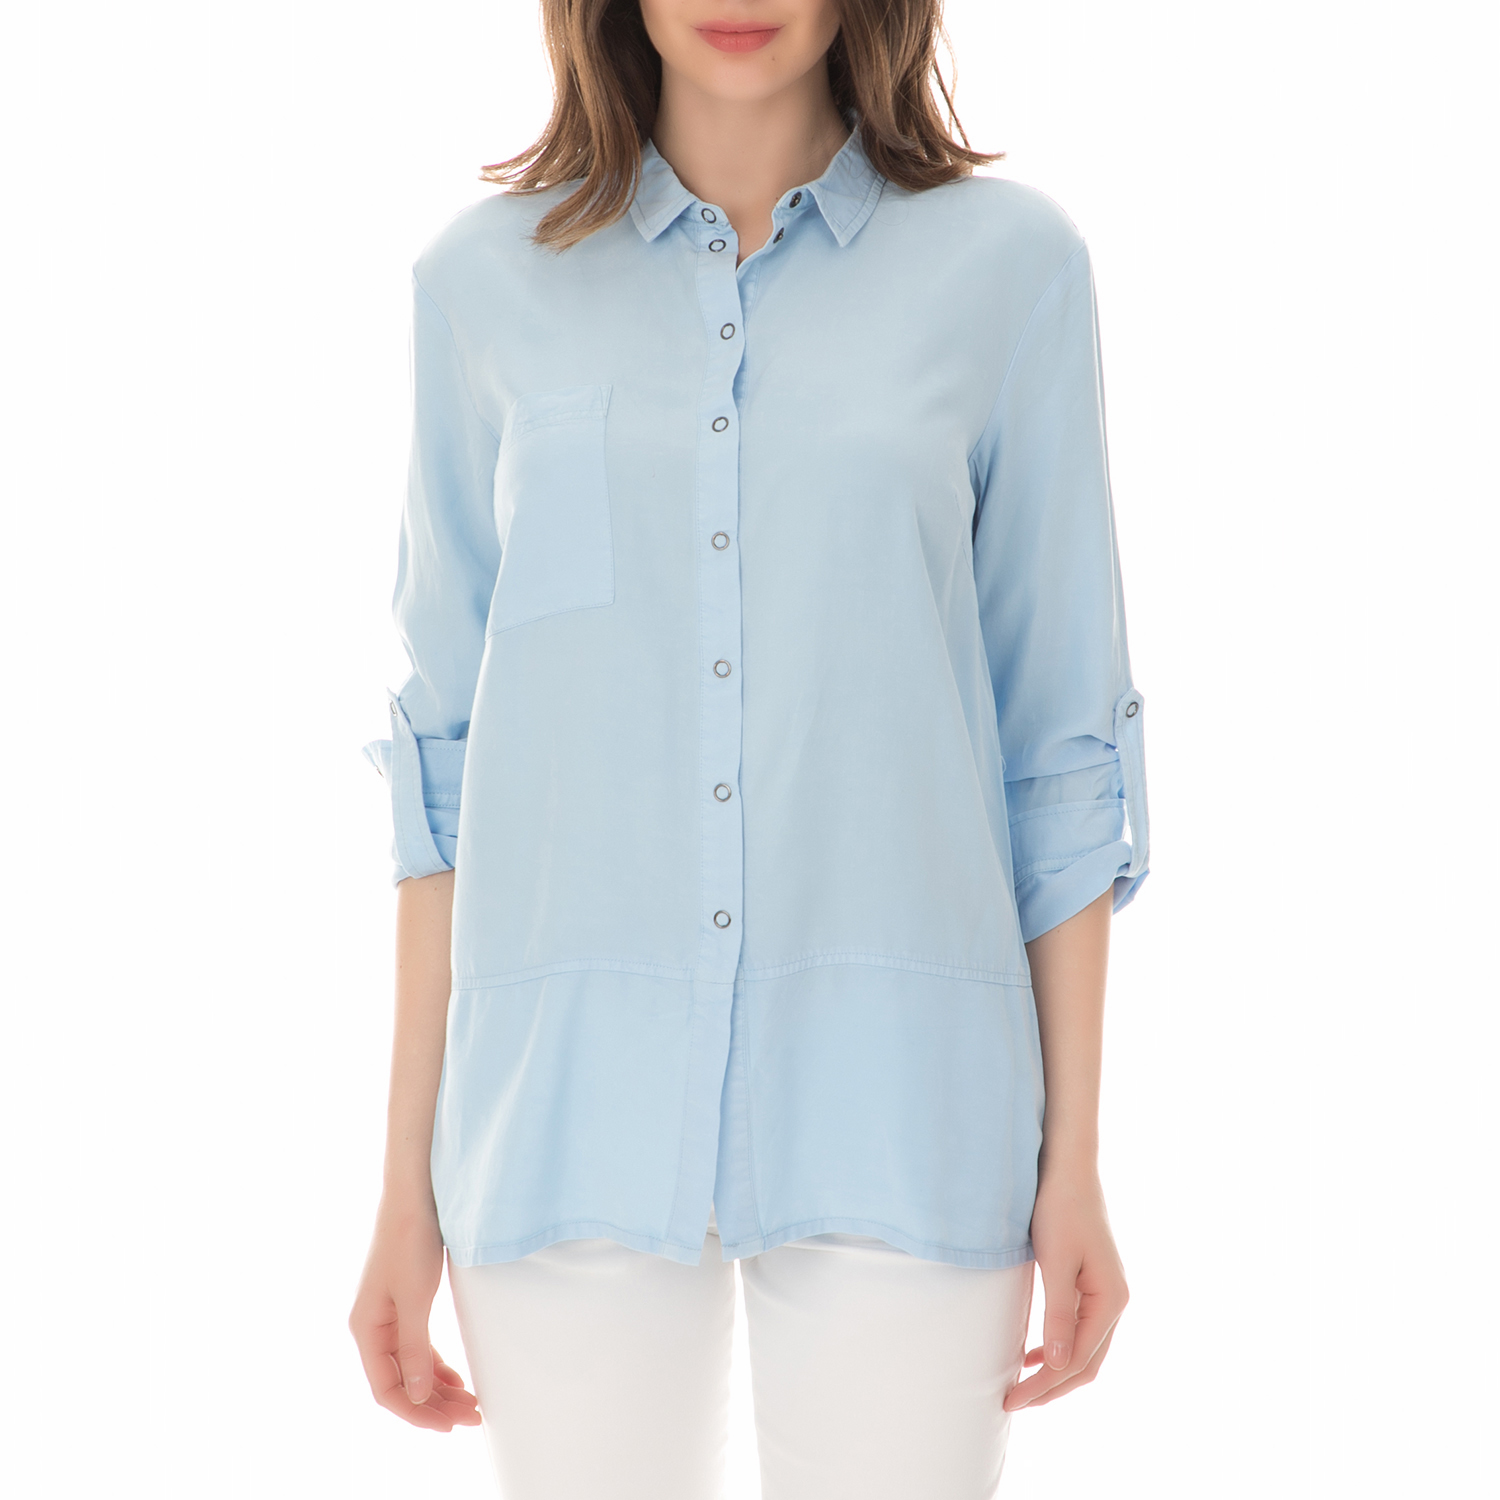 Γυναικεία/Ρούχα/Πουκάμισα/Μακρυμάνικα NUMPH - Γυναικείο μακρυμάνικο πουκάμισο NUMPH γαλάζιο